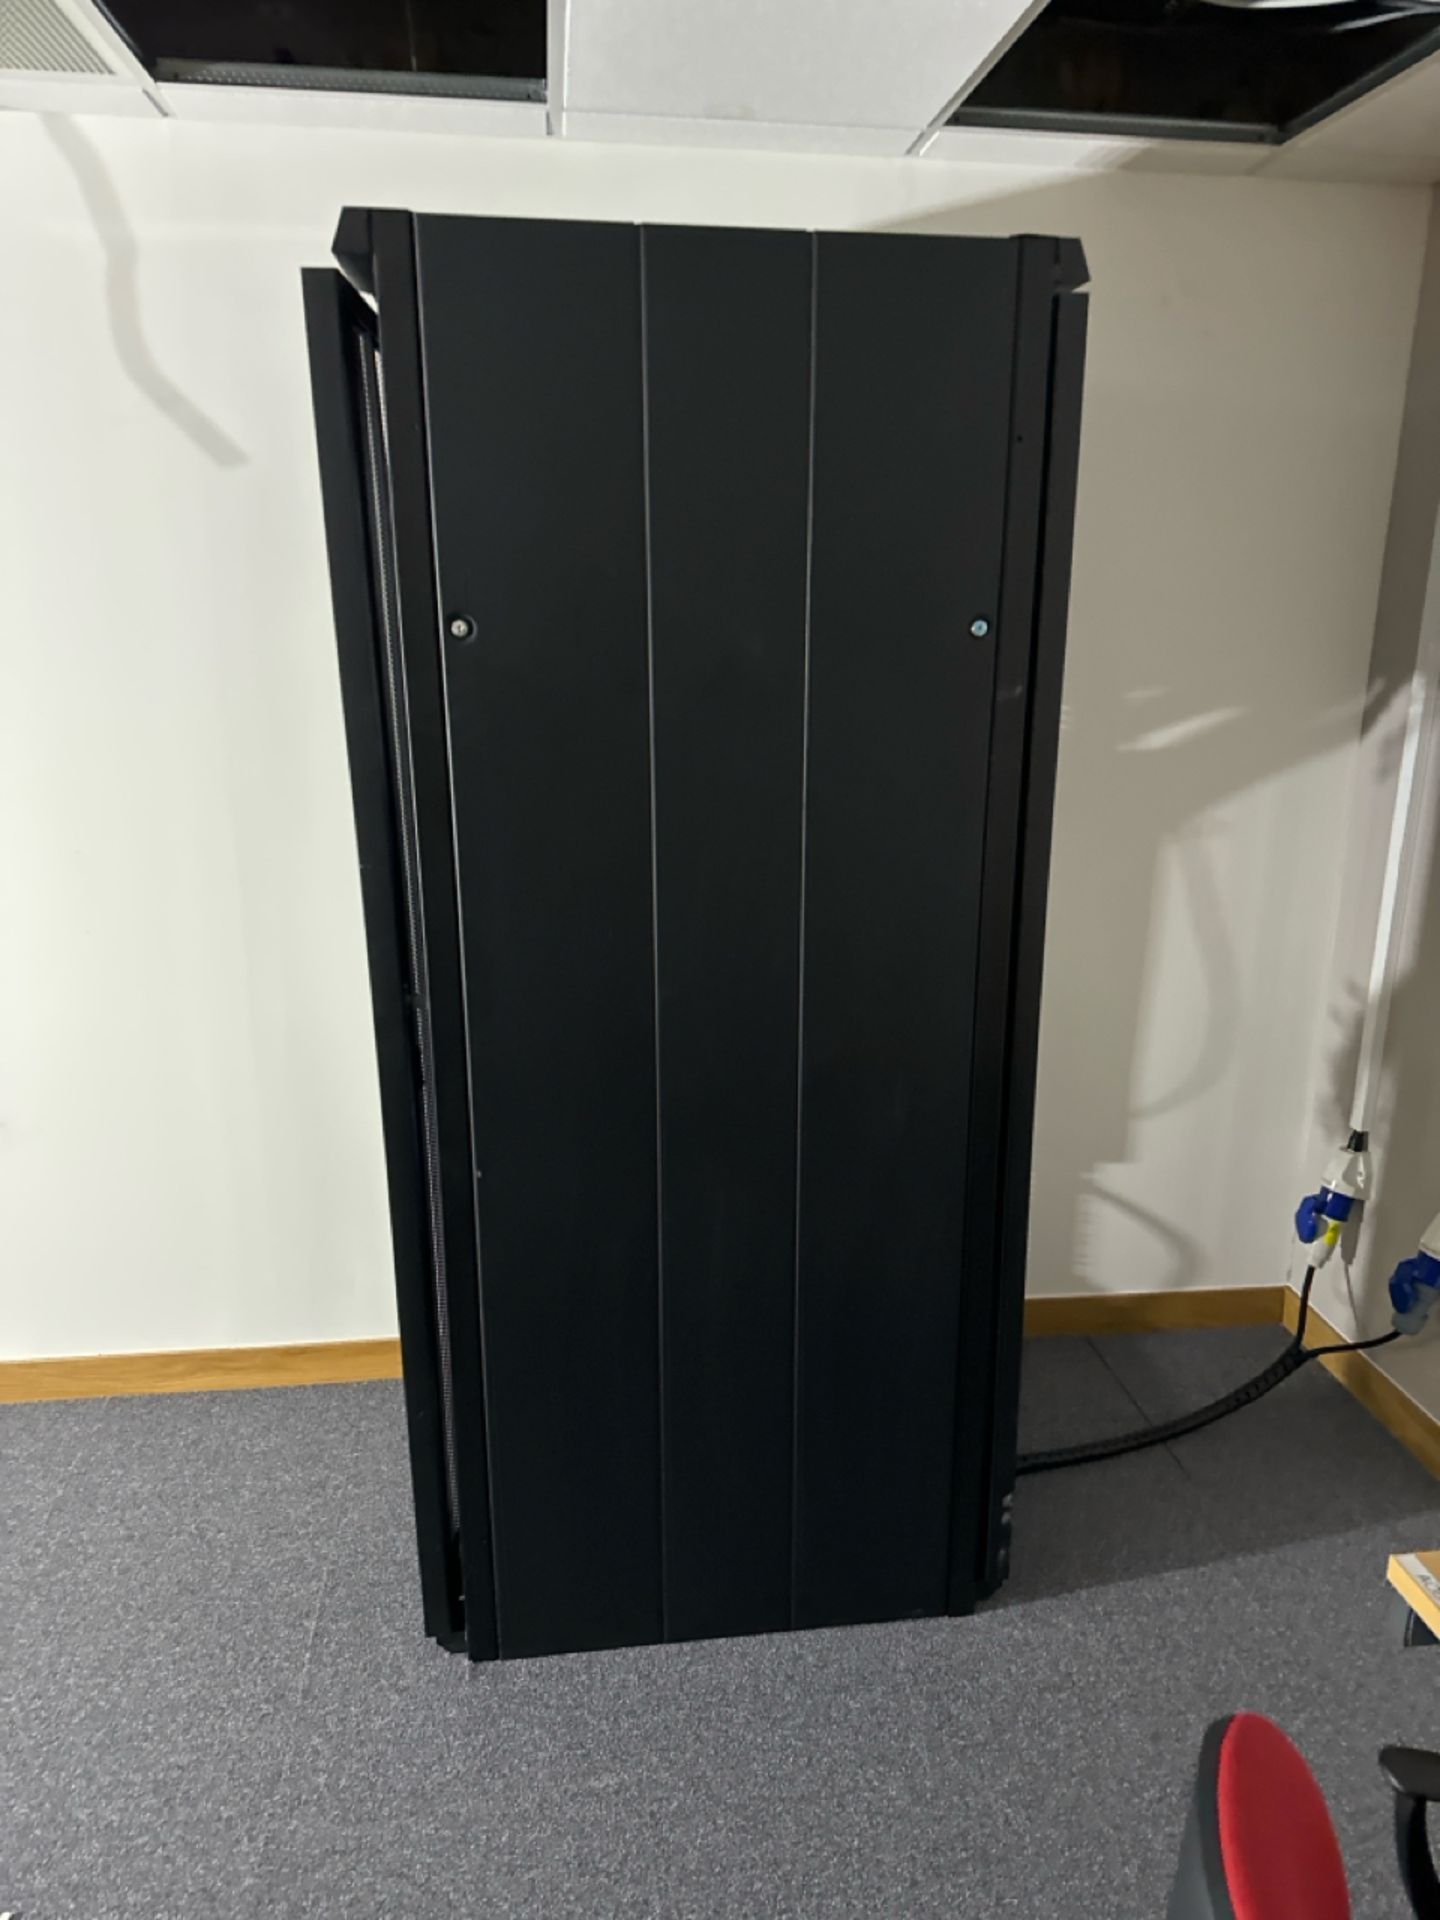 Black Server Cabinet - Image 3 of 3